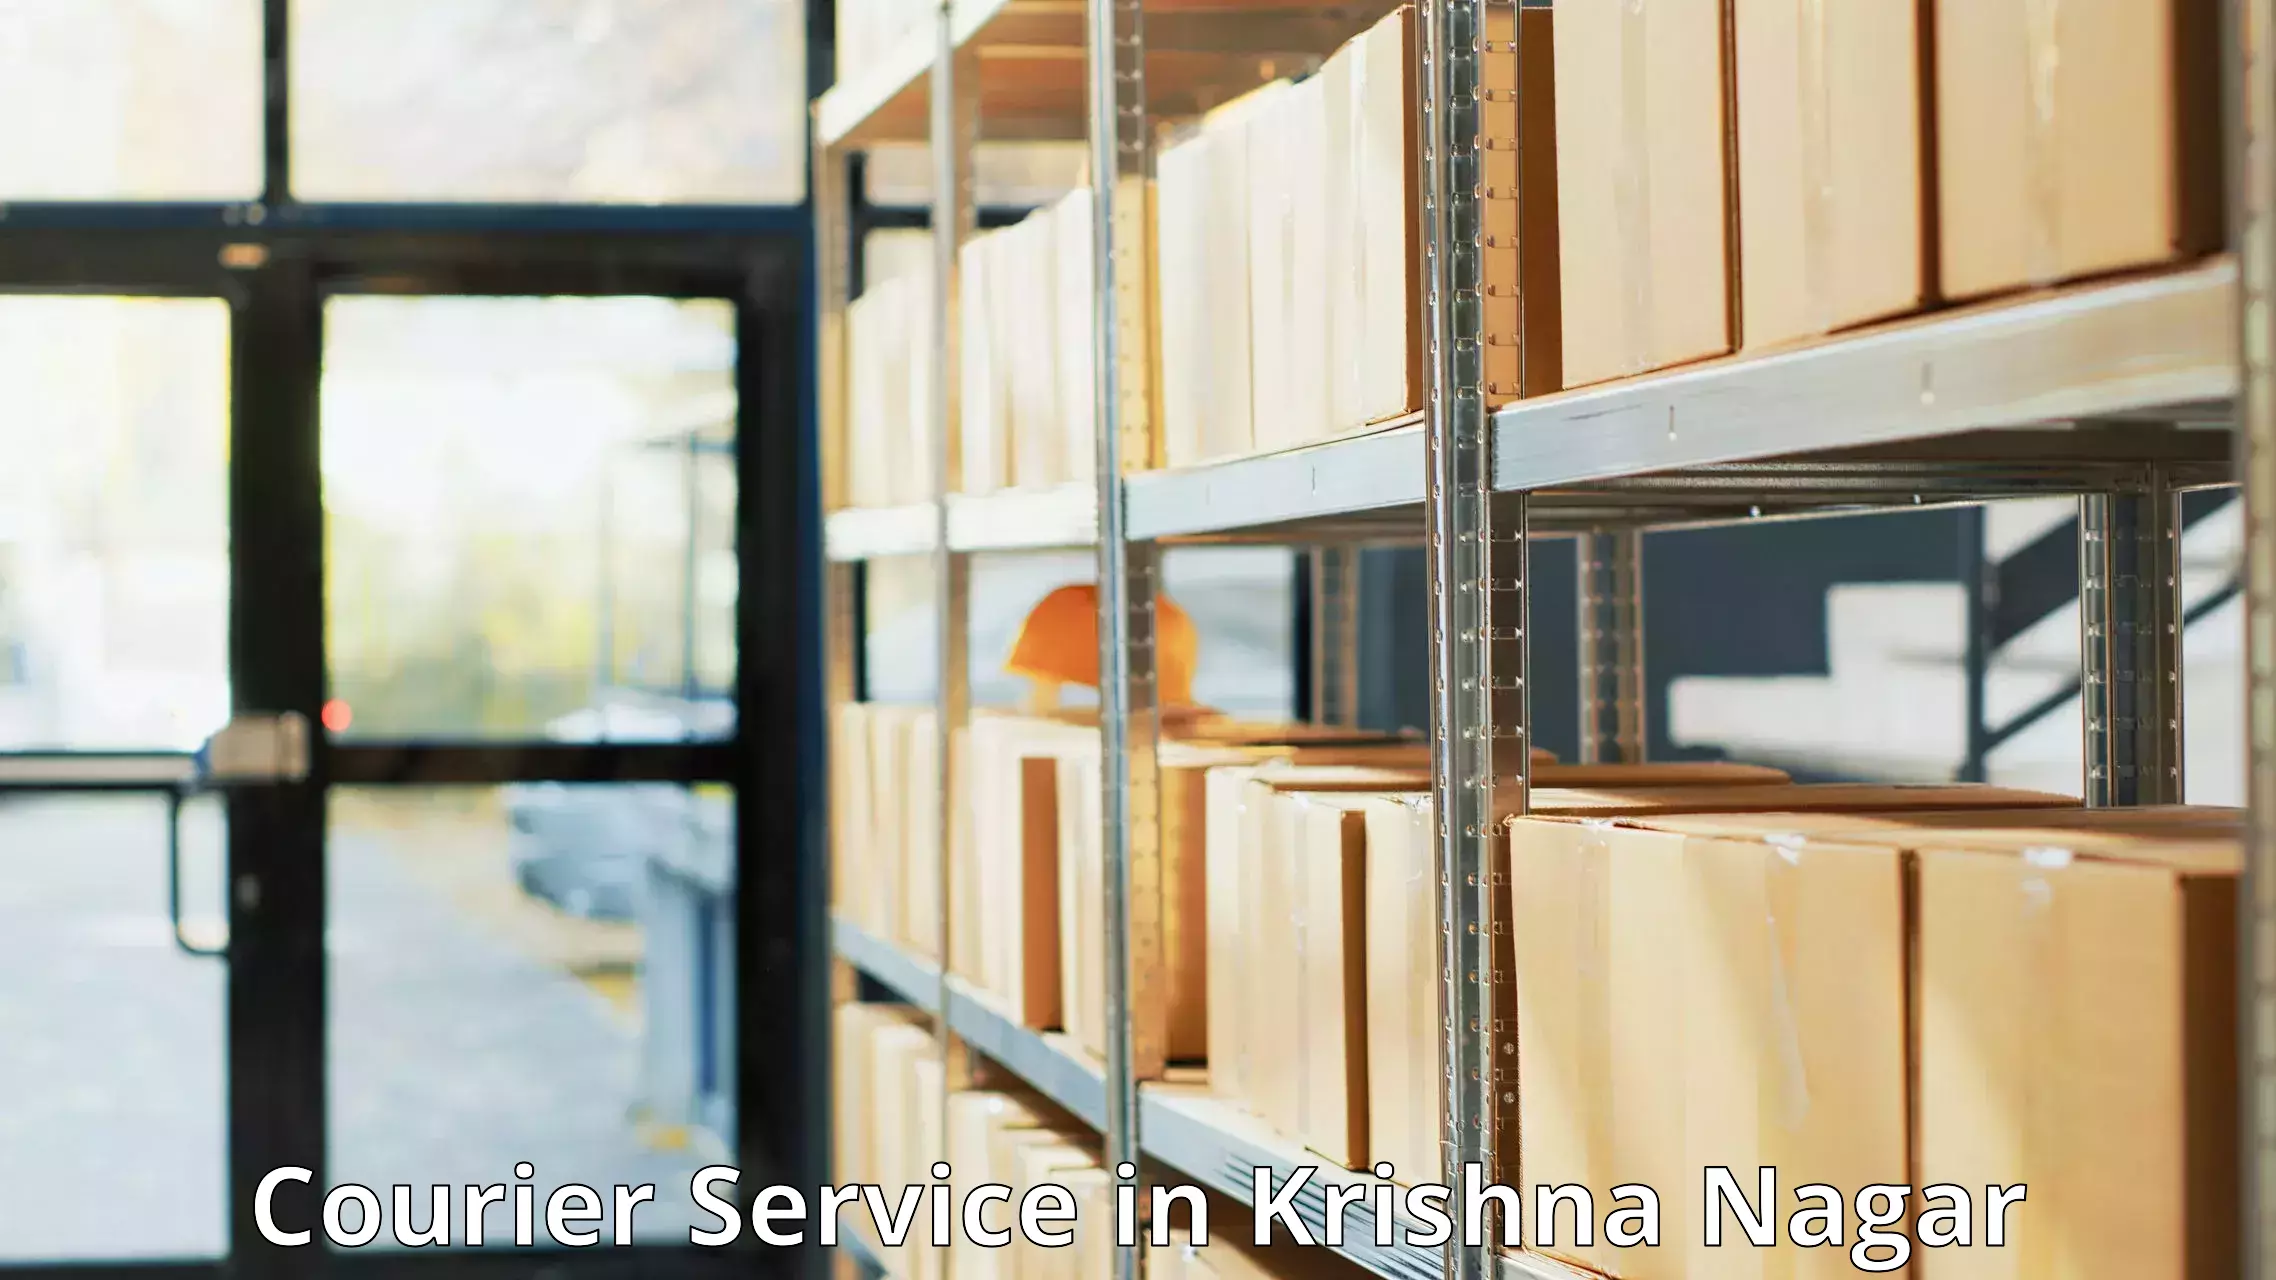 Courier service partnerships in Krishna Nagar